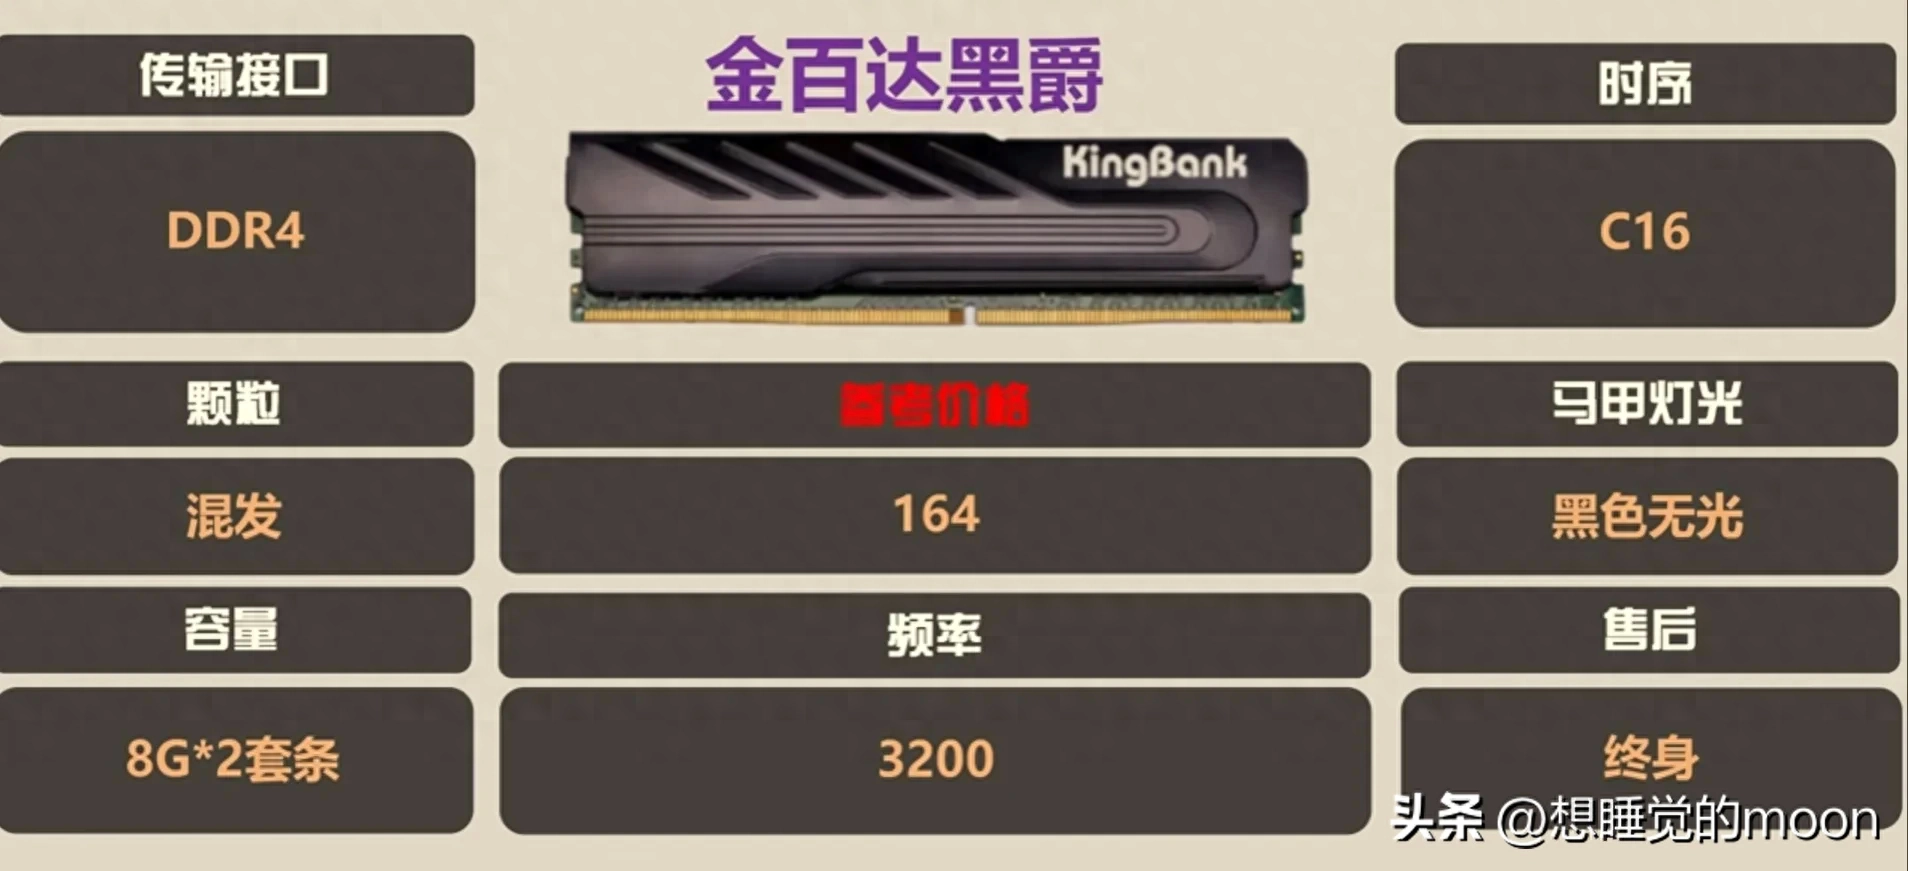 前言双 8G 的内存条的券后价格跌破 150 元了，本期就推荐一批性价比拉满的内存条，让你游戏帧数更进一步。首先是 DDR4 的内存条DDR4 金百达黑爵第一款必须是威刚代工厂出品的金百达黑